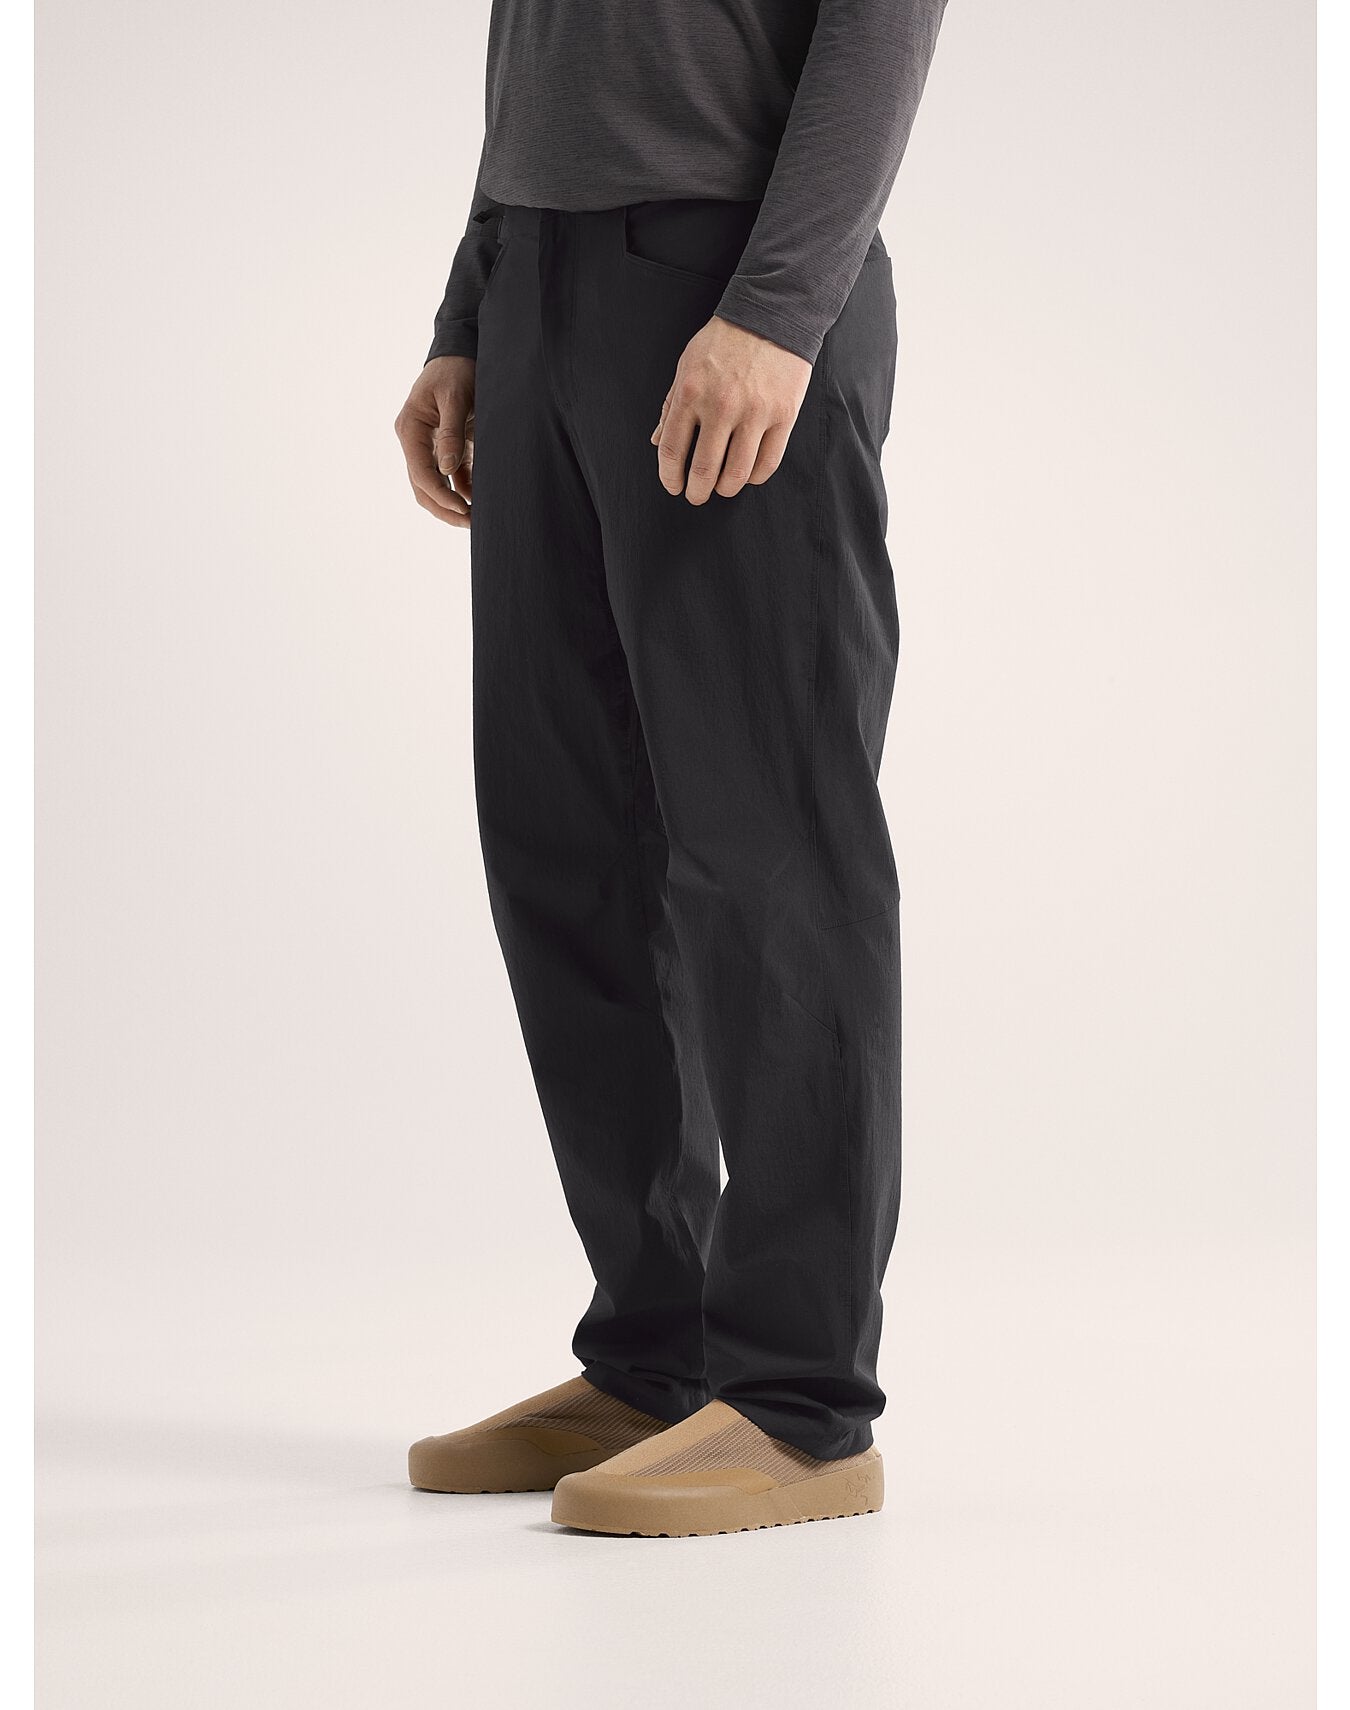 Pantalon Konseal Homme - BLACK